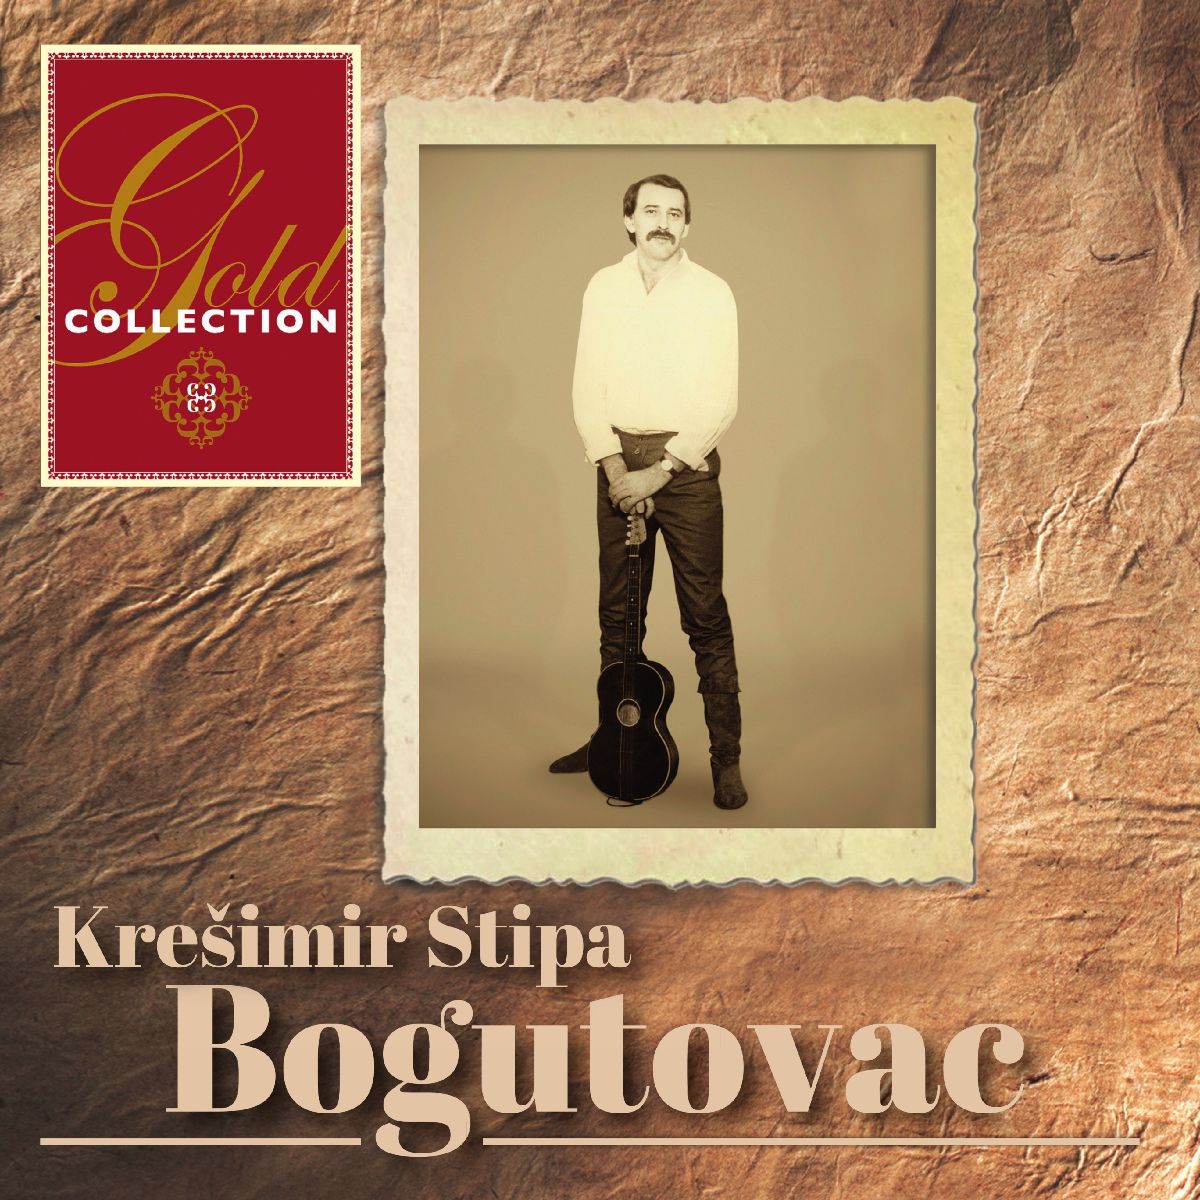 Dvostruko CD izdanje s najboljim pjesmama tamburaškog velikana Krešimira Stipe Bogutovca